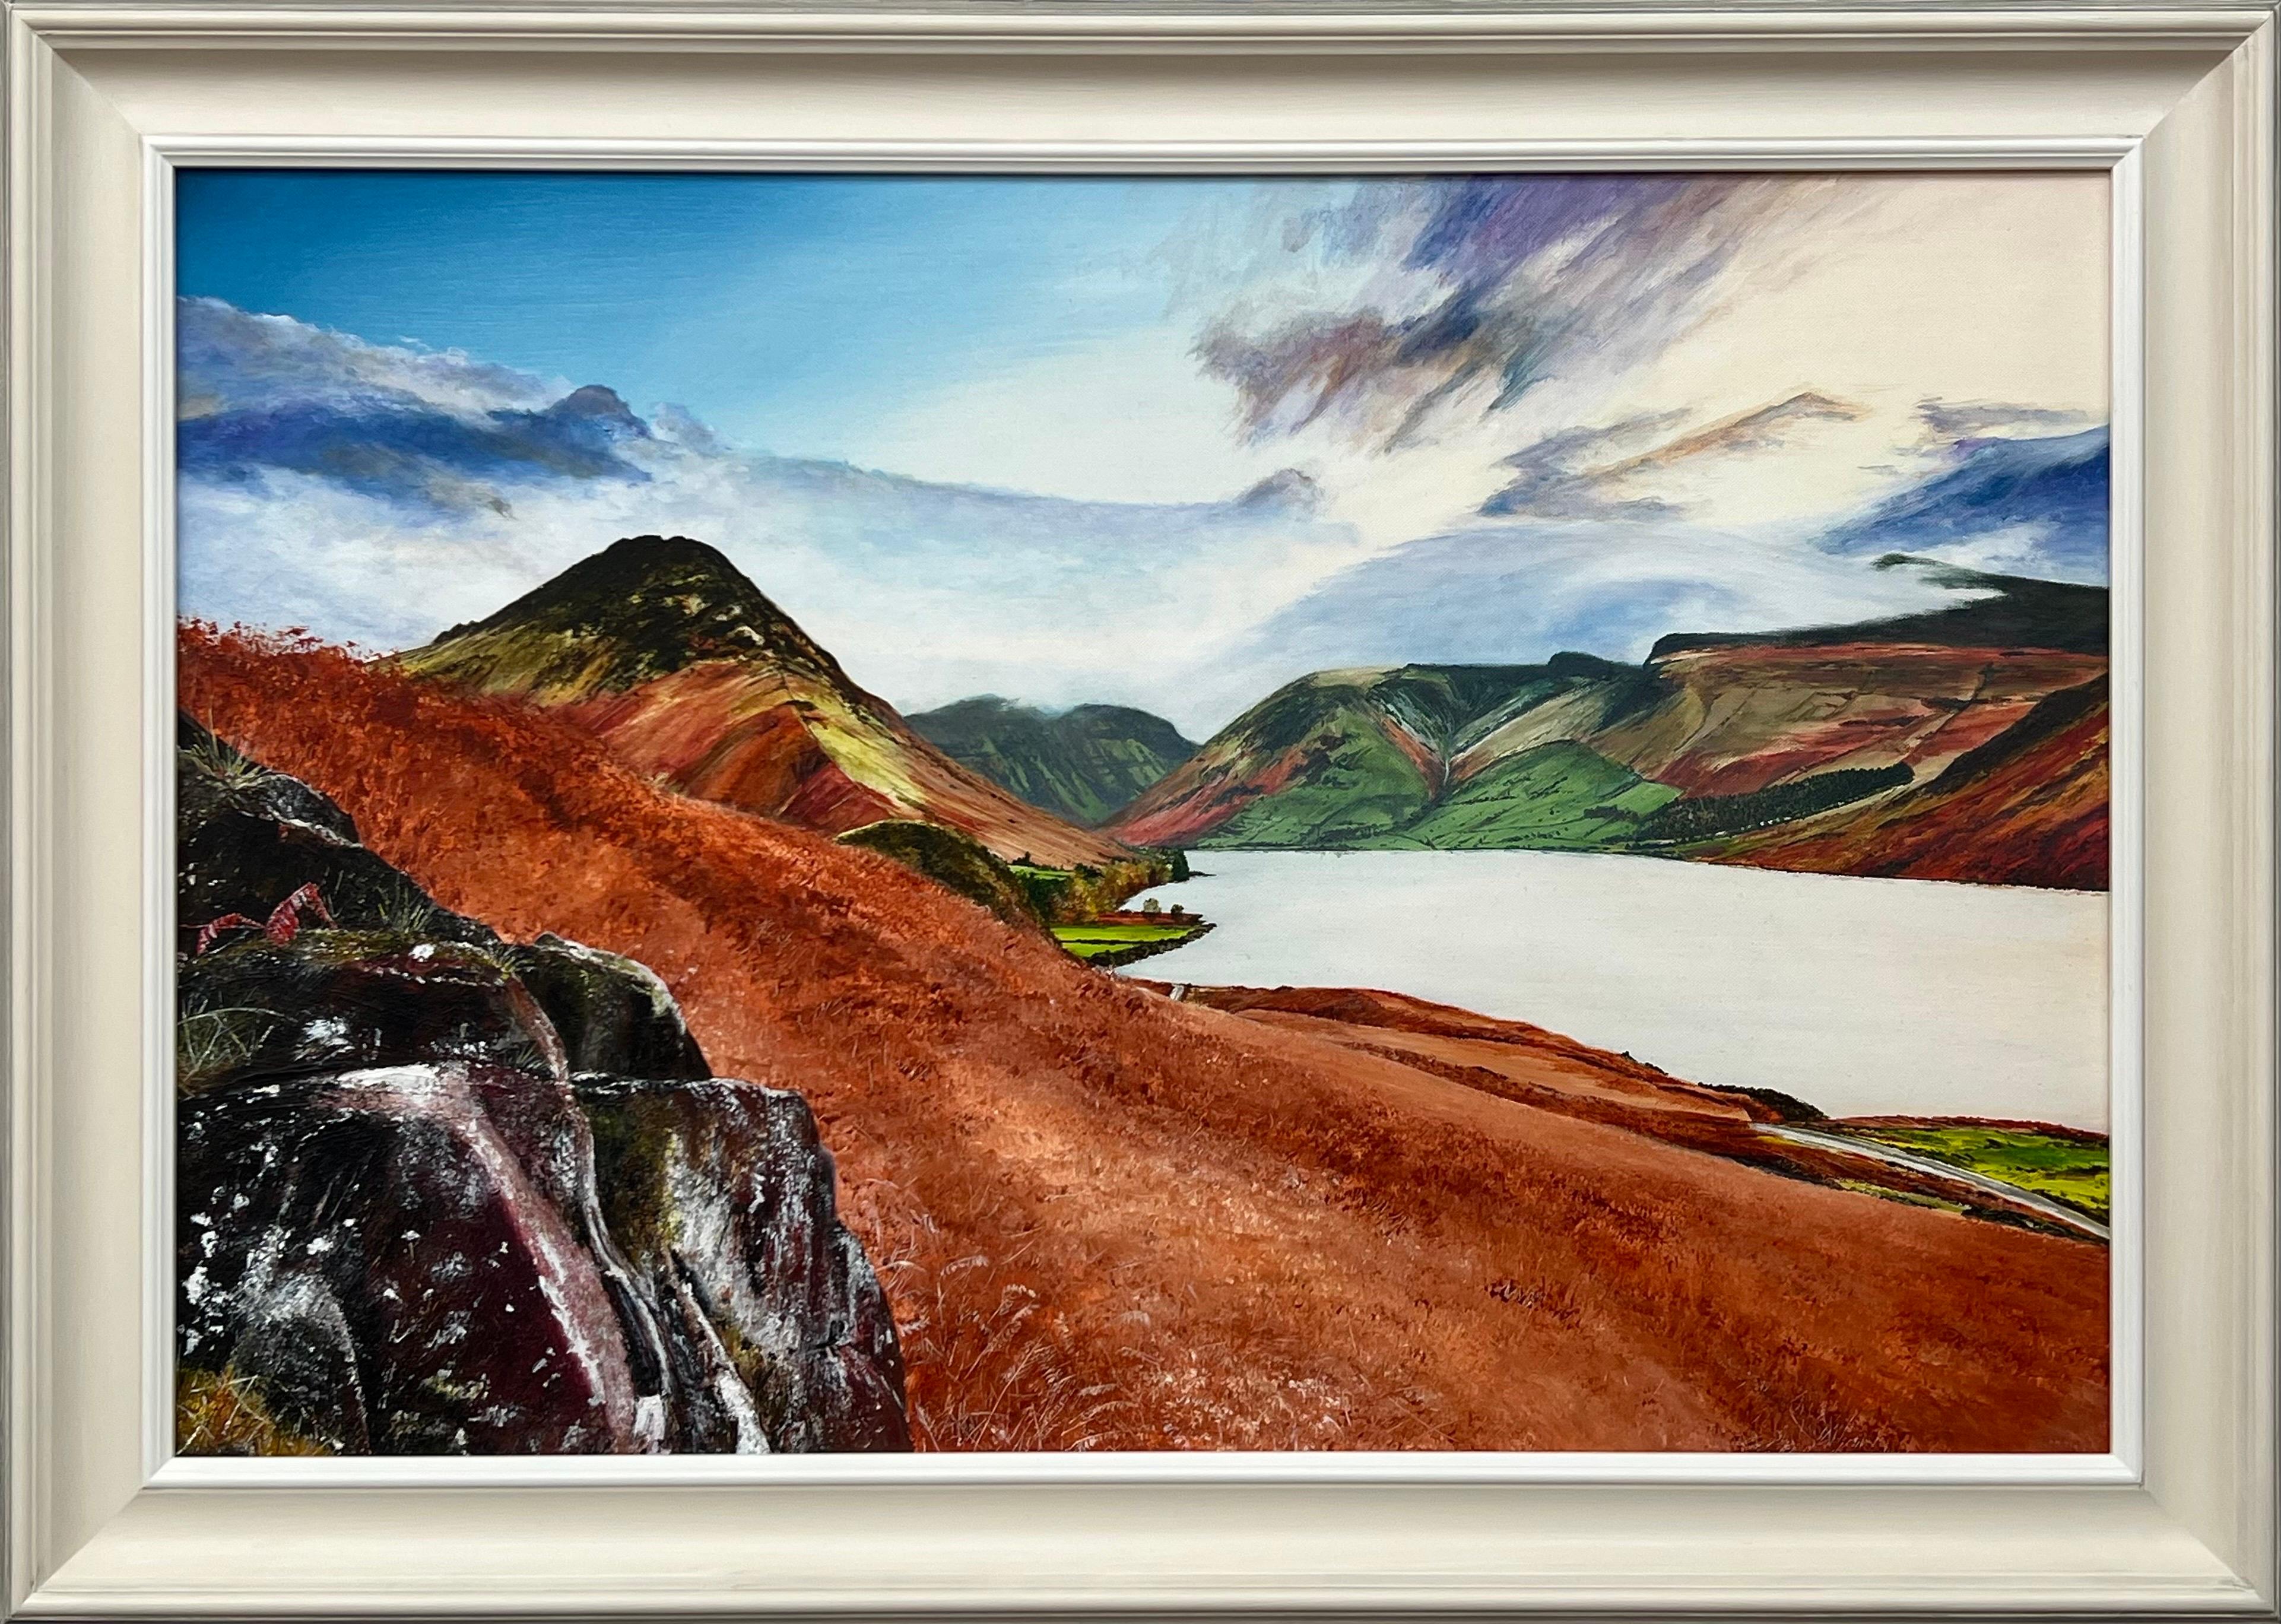 Landschaftsgemälde von Wastwater Lake District von einem zeitgenössischen britischen Künstler